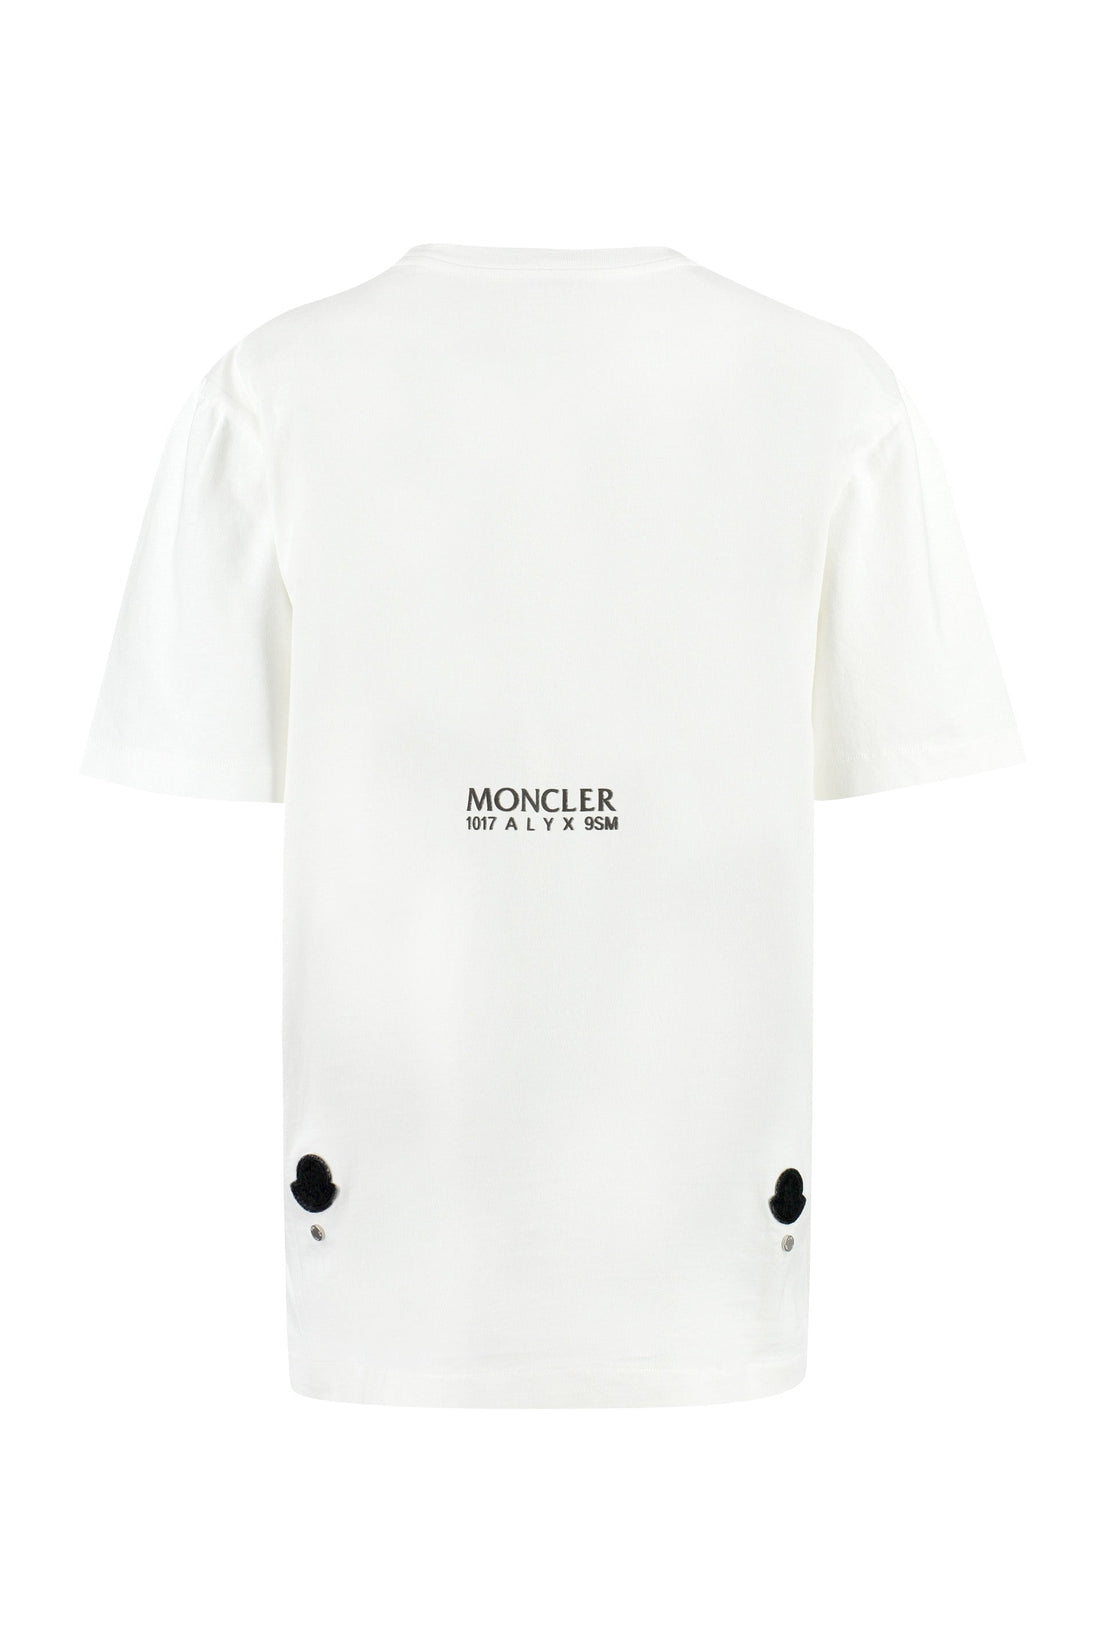 Moncler Genius-OUTLET-SALE-6 Moncler 1017 Alyx 9SM - Cotton crew-neck T-shirt-ARCHIVIST